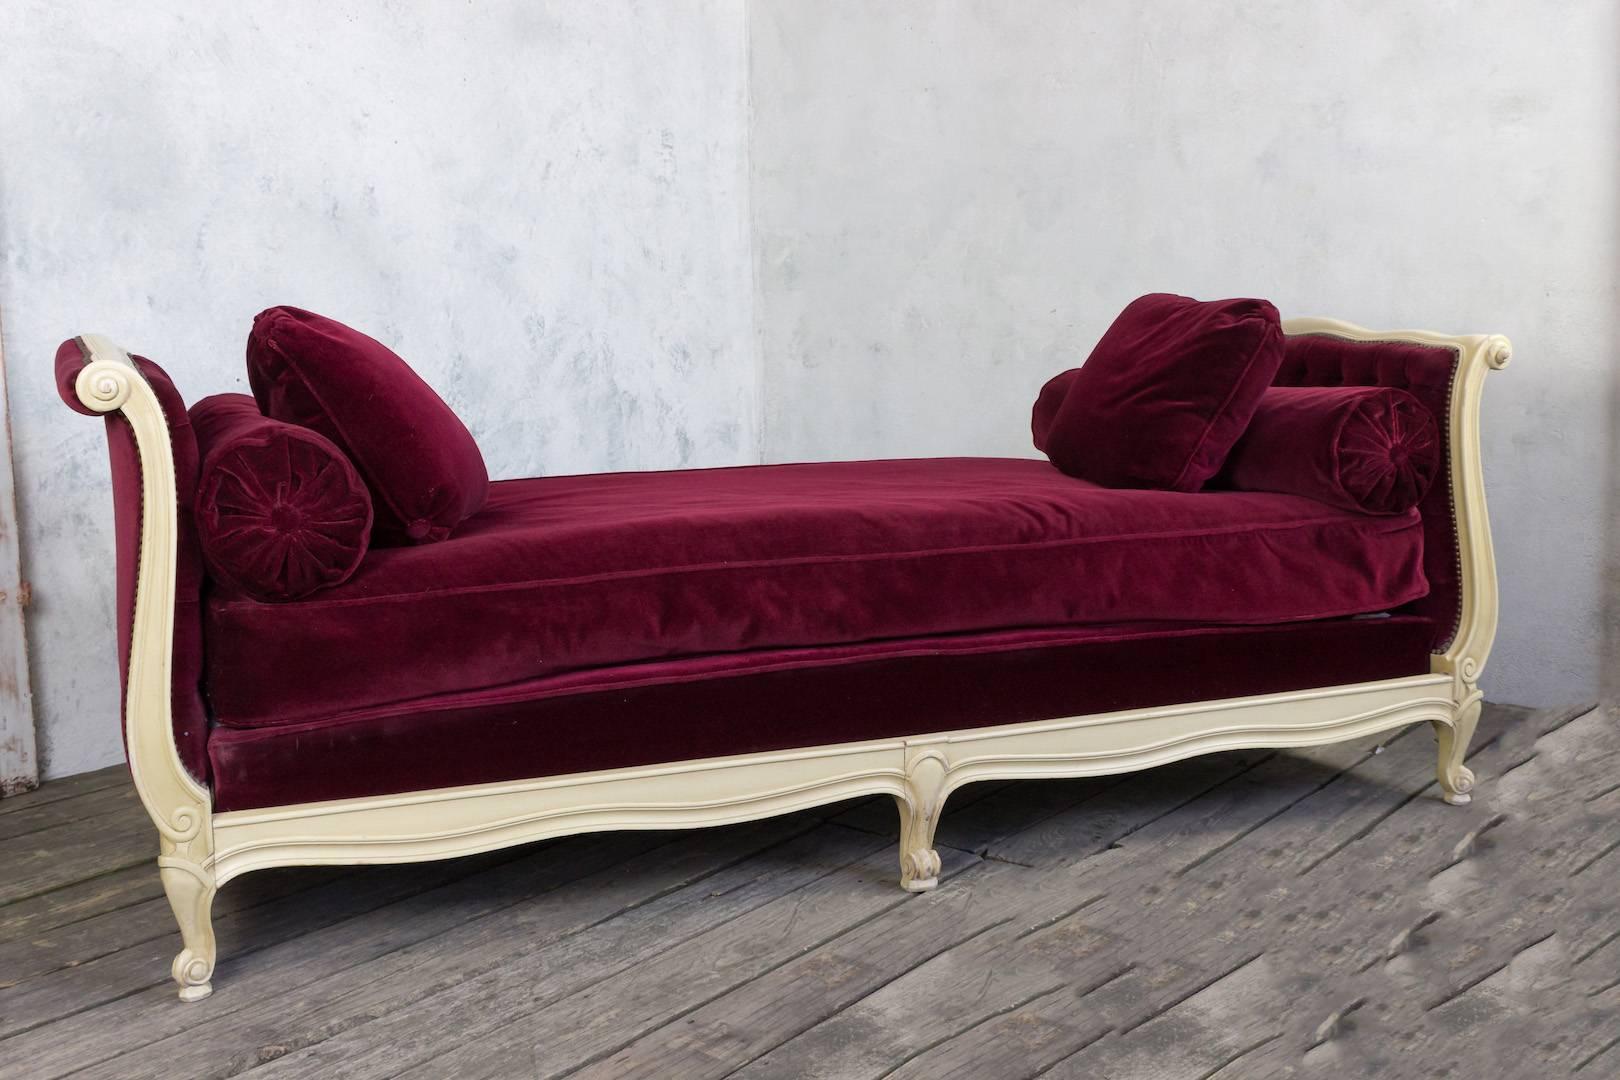 Sehr große und breite Liege aus Frankreich, um 1940, mit cremeweiß patinierter Oberfläche. Das Bett ist mit einem luxuriösen bordeauxfarbenen Samt bezogen, Kopf- und Fußteil sind getuftet. Die Liege ist in sehr gutem Zustand.